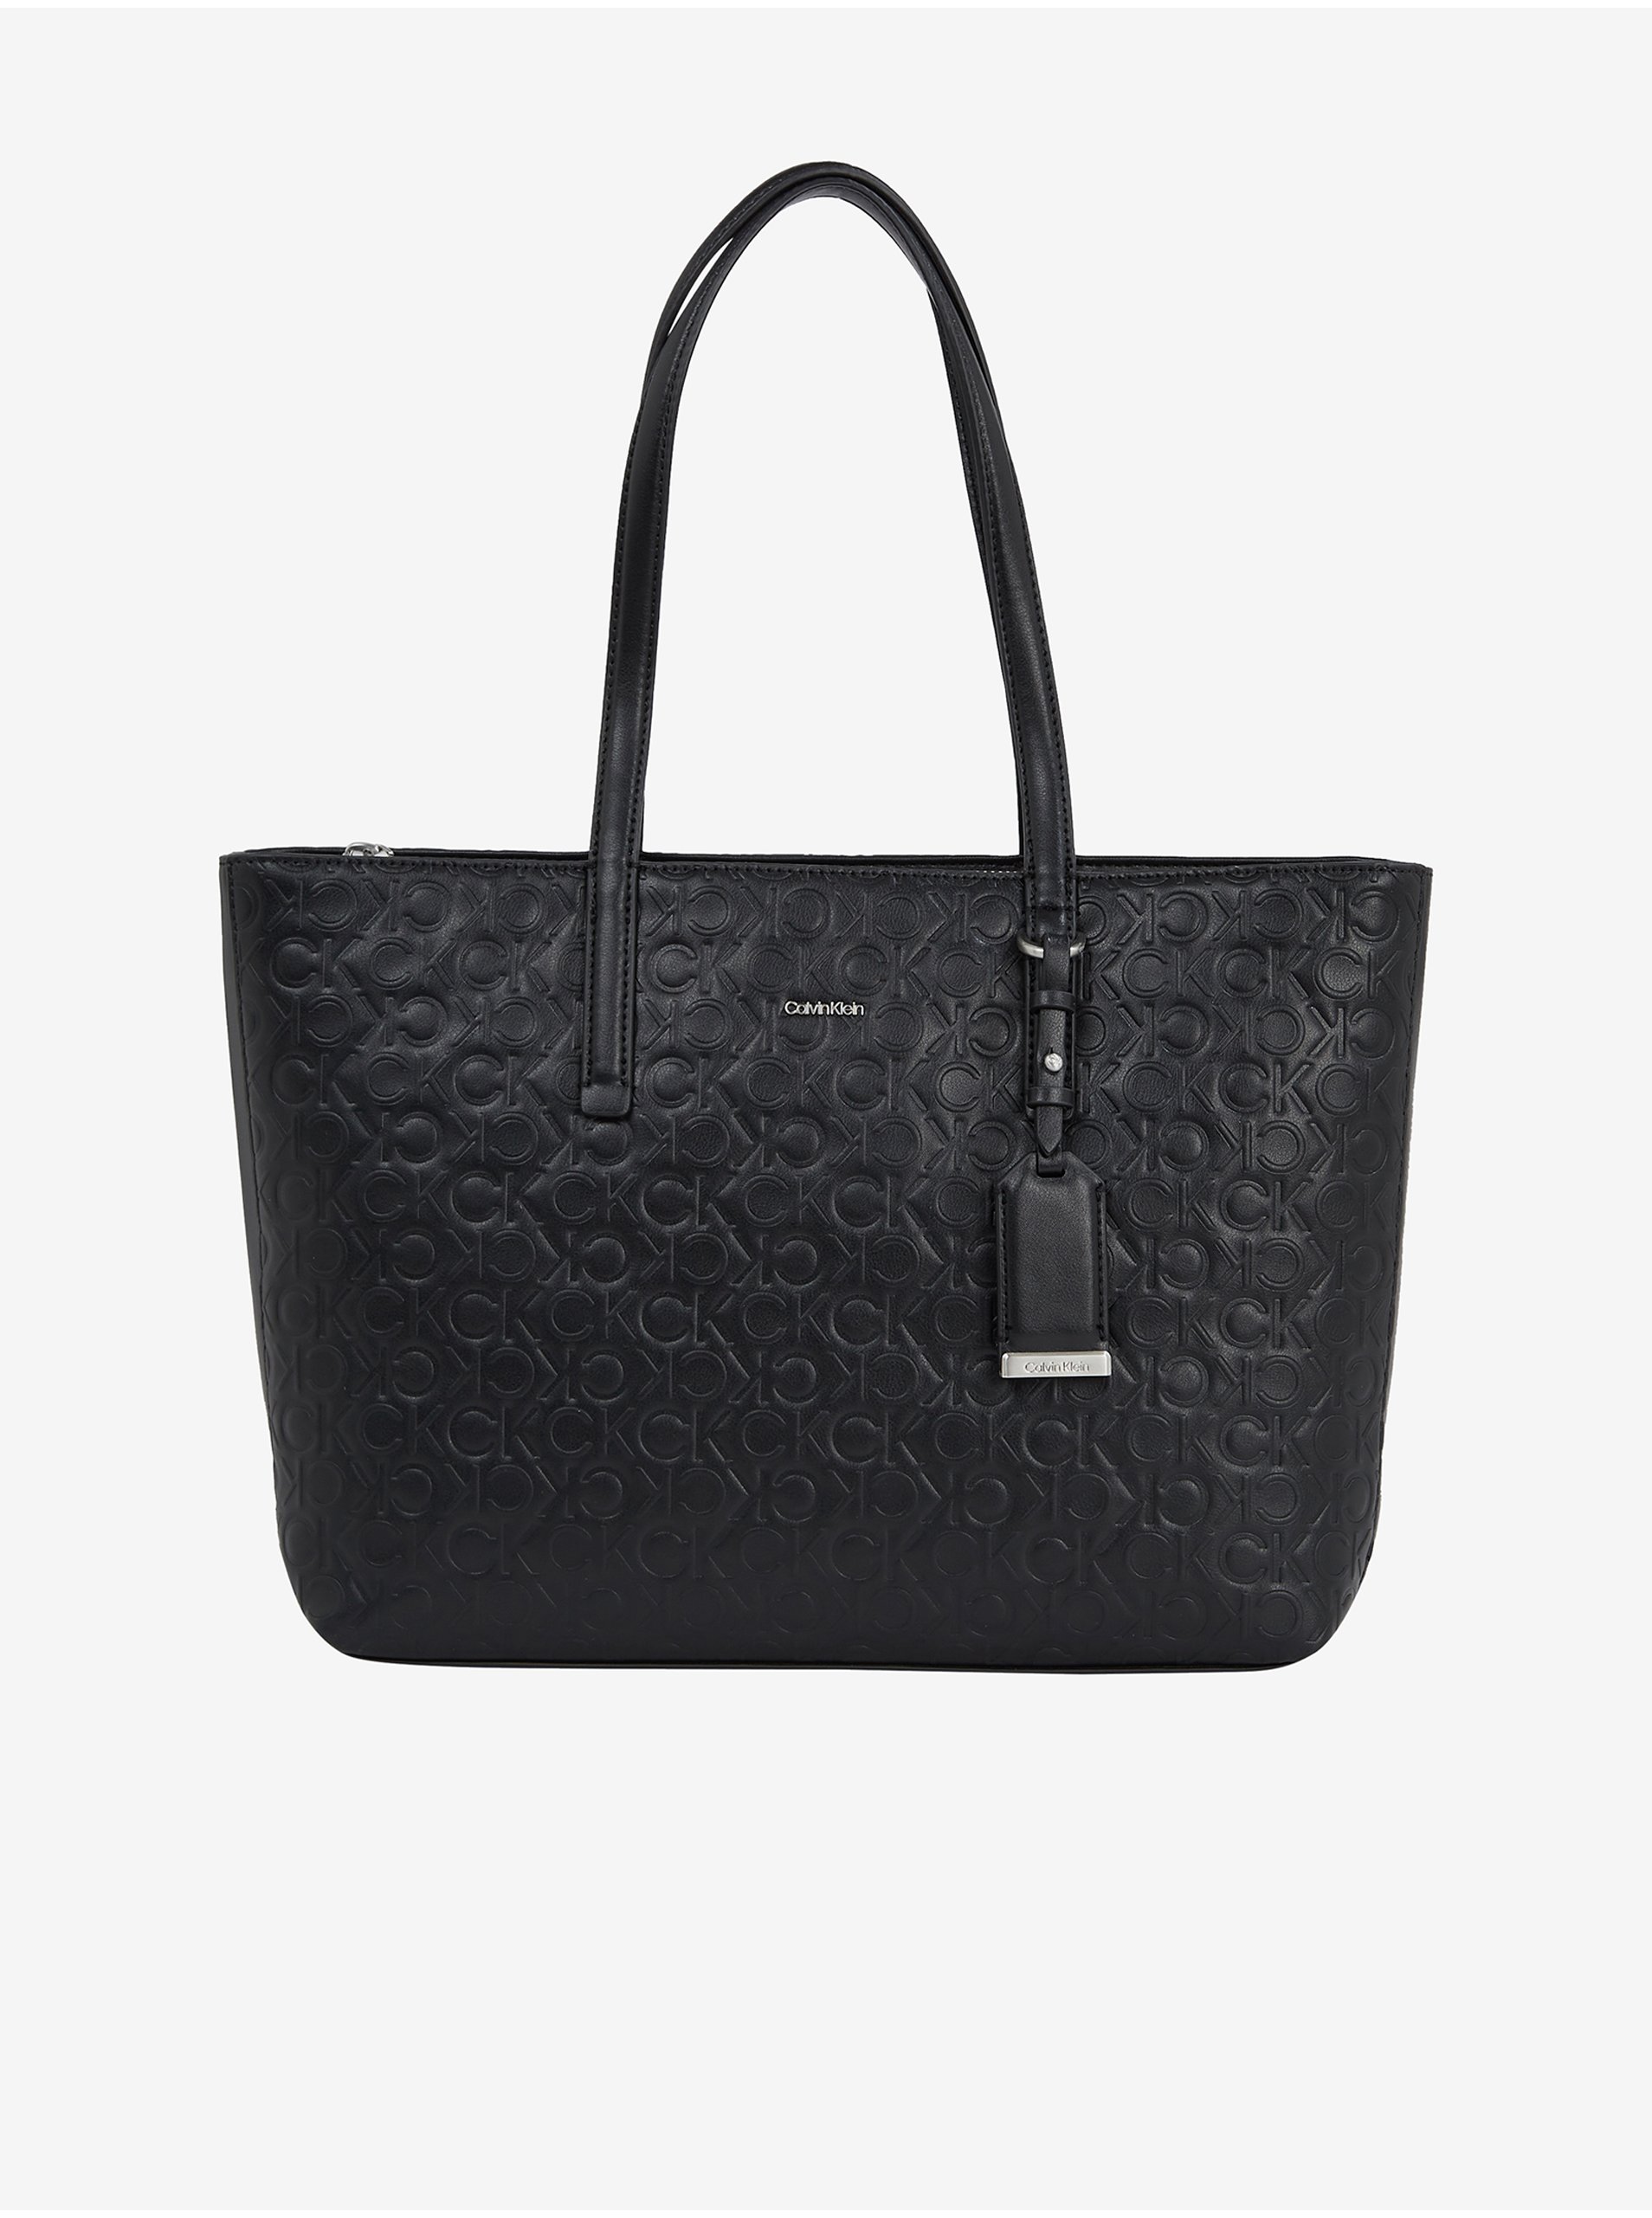 Women's handbag Calvin Klein